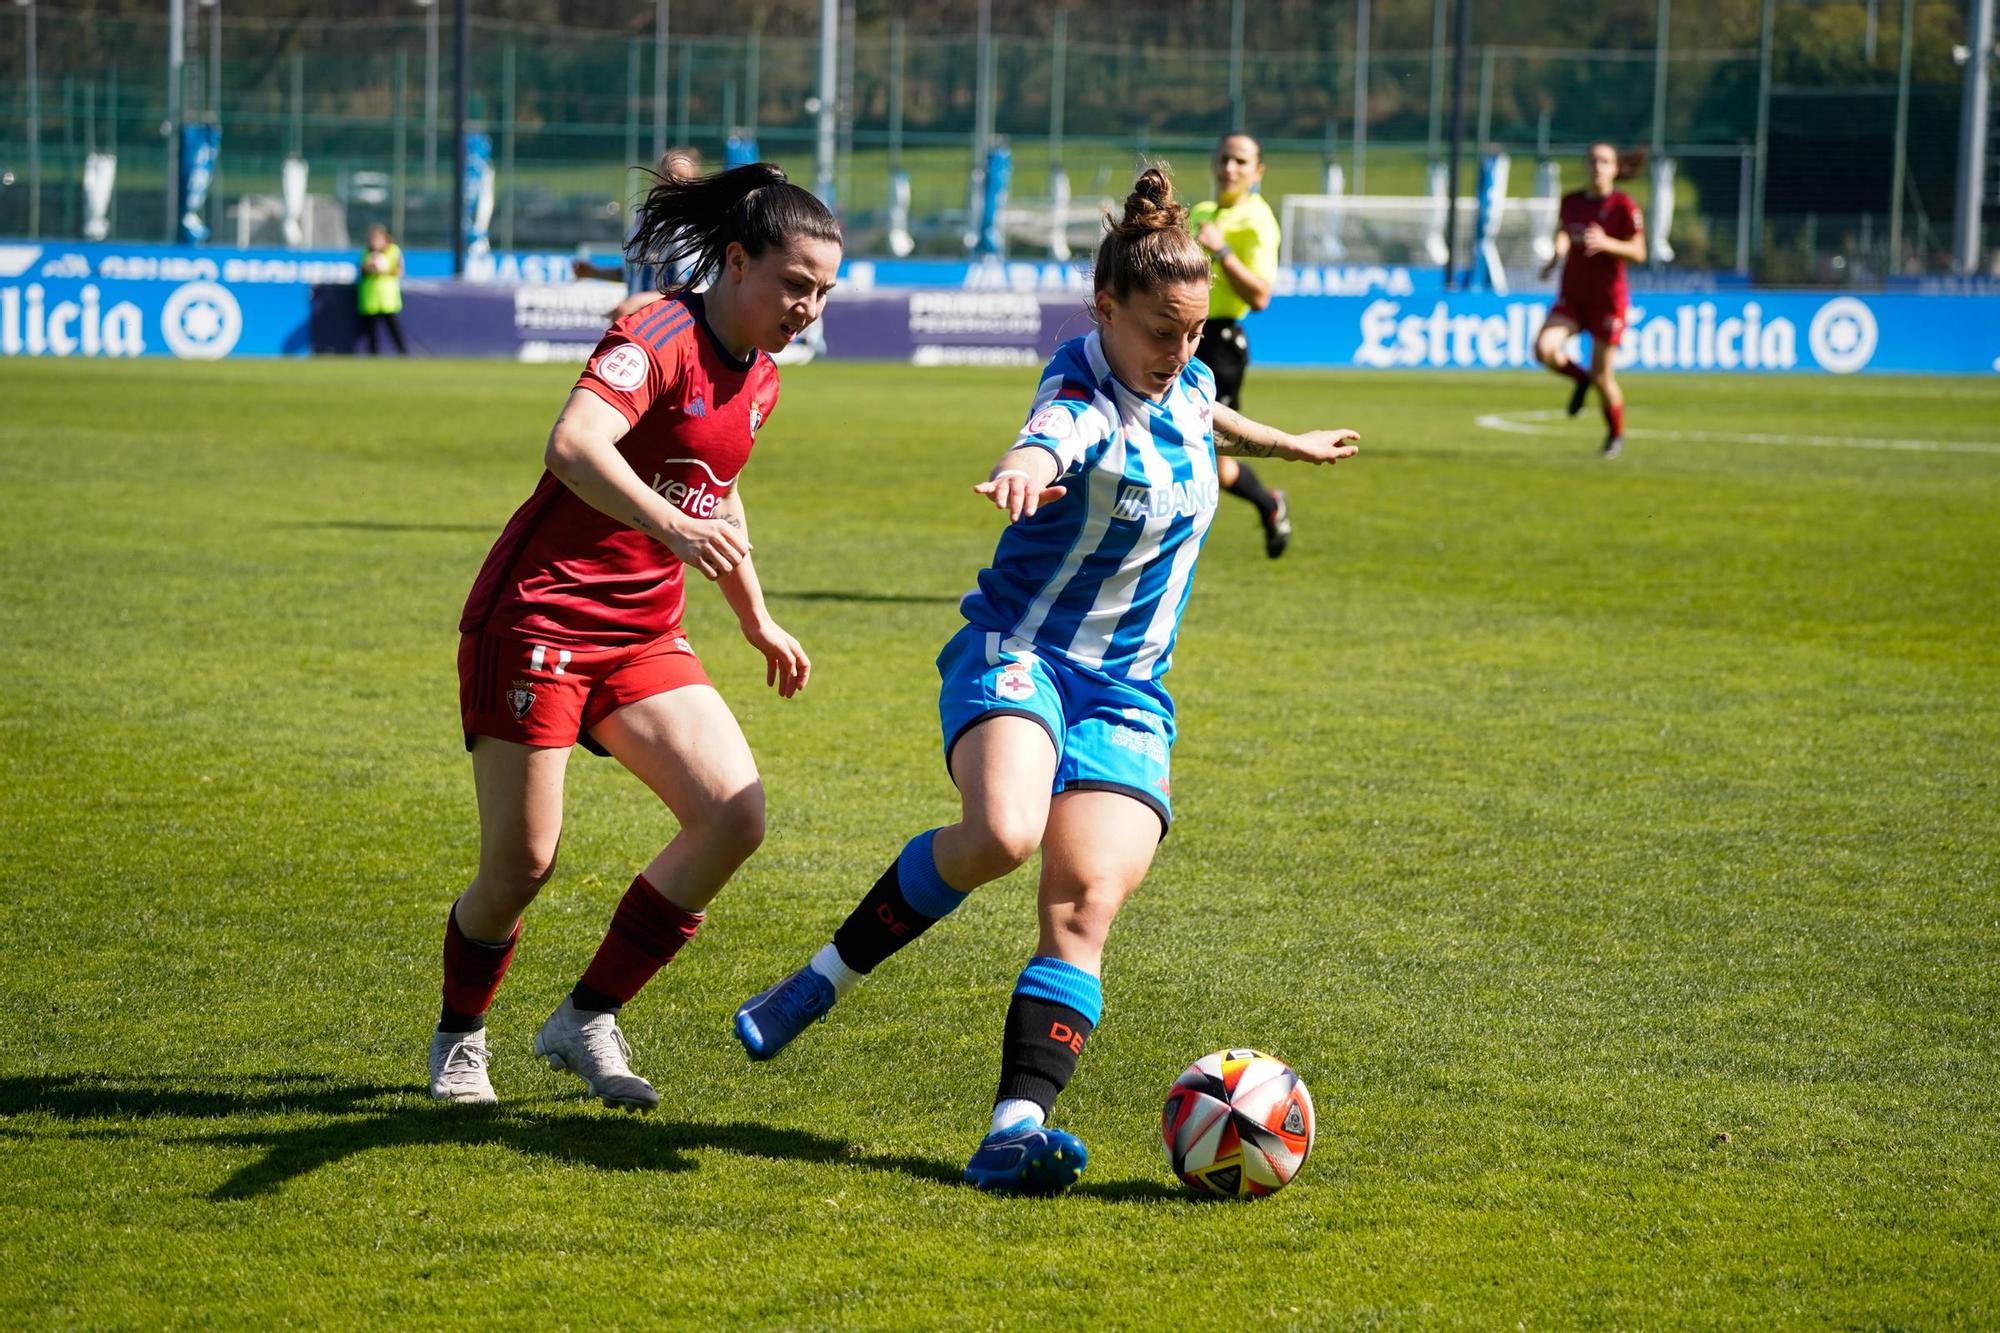 Final amargo y empate (2-2) para el Dépor Abanca - Espanyol